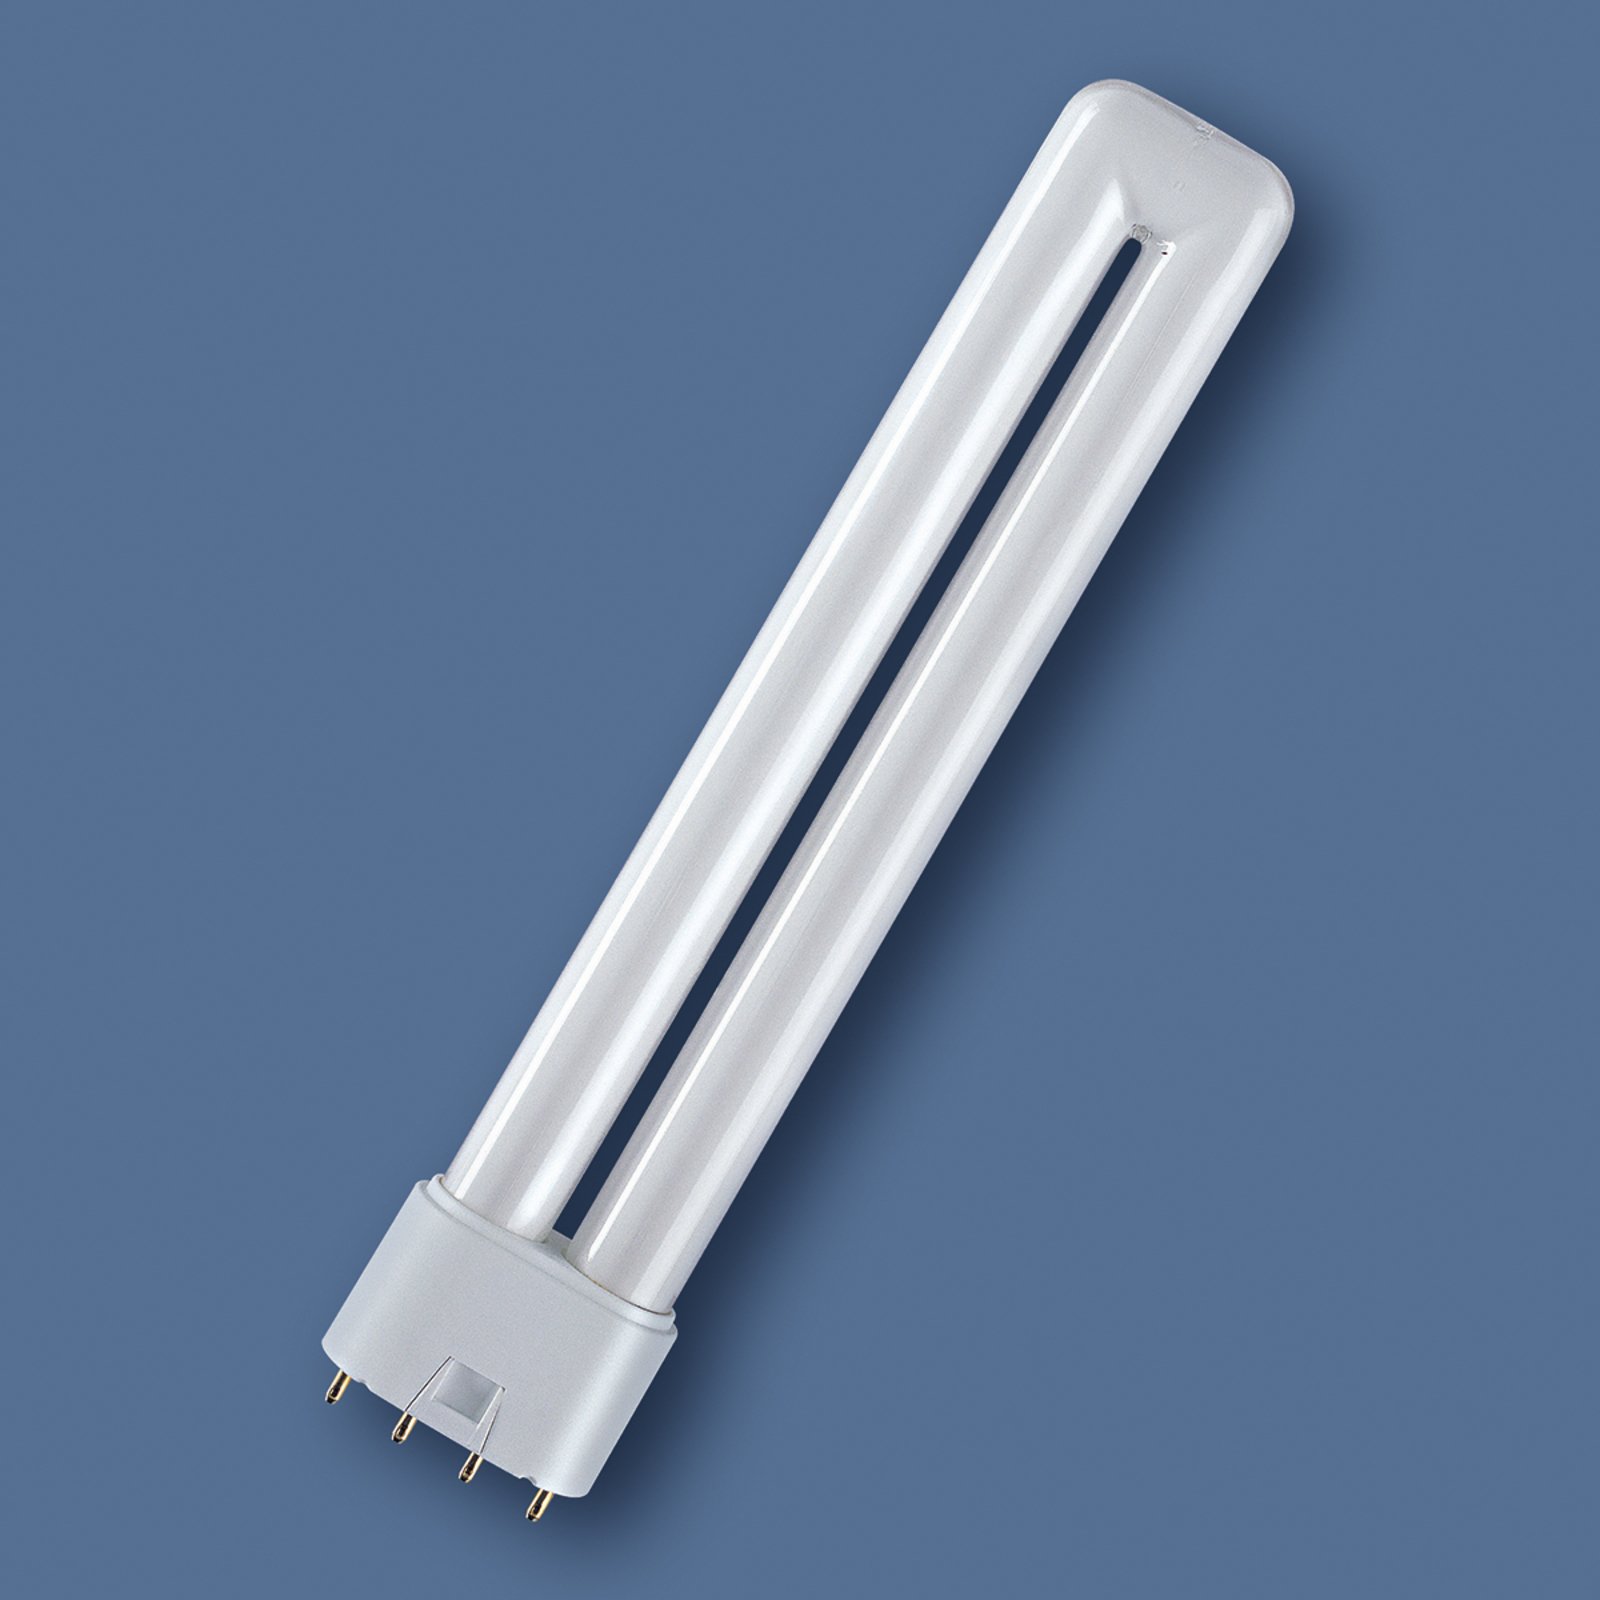 2G11 18 W 830 Dulux L compact fluorescent bulb